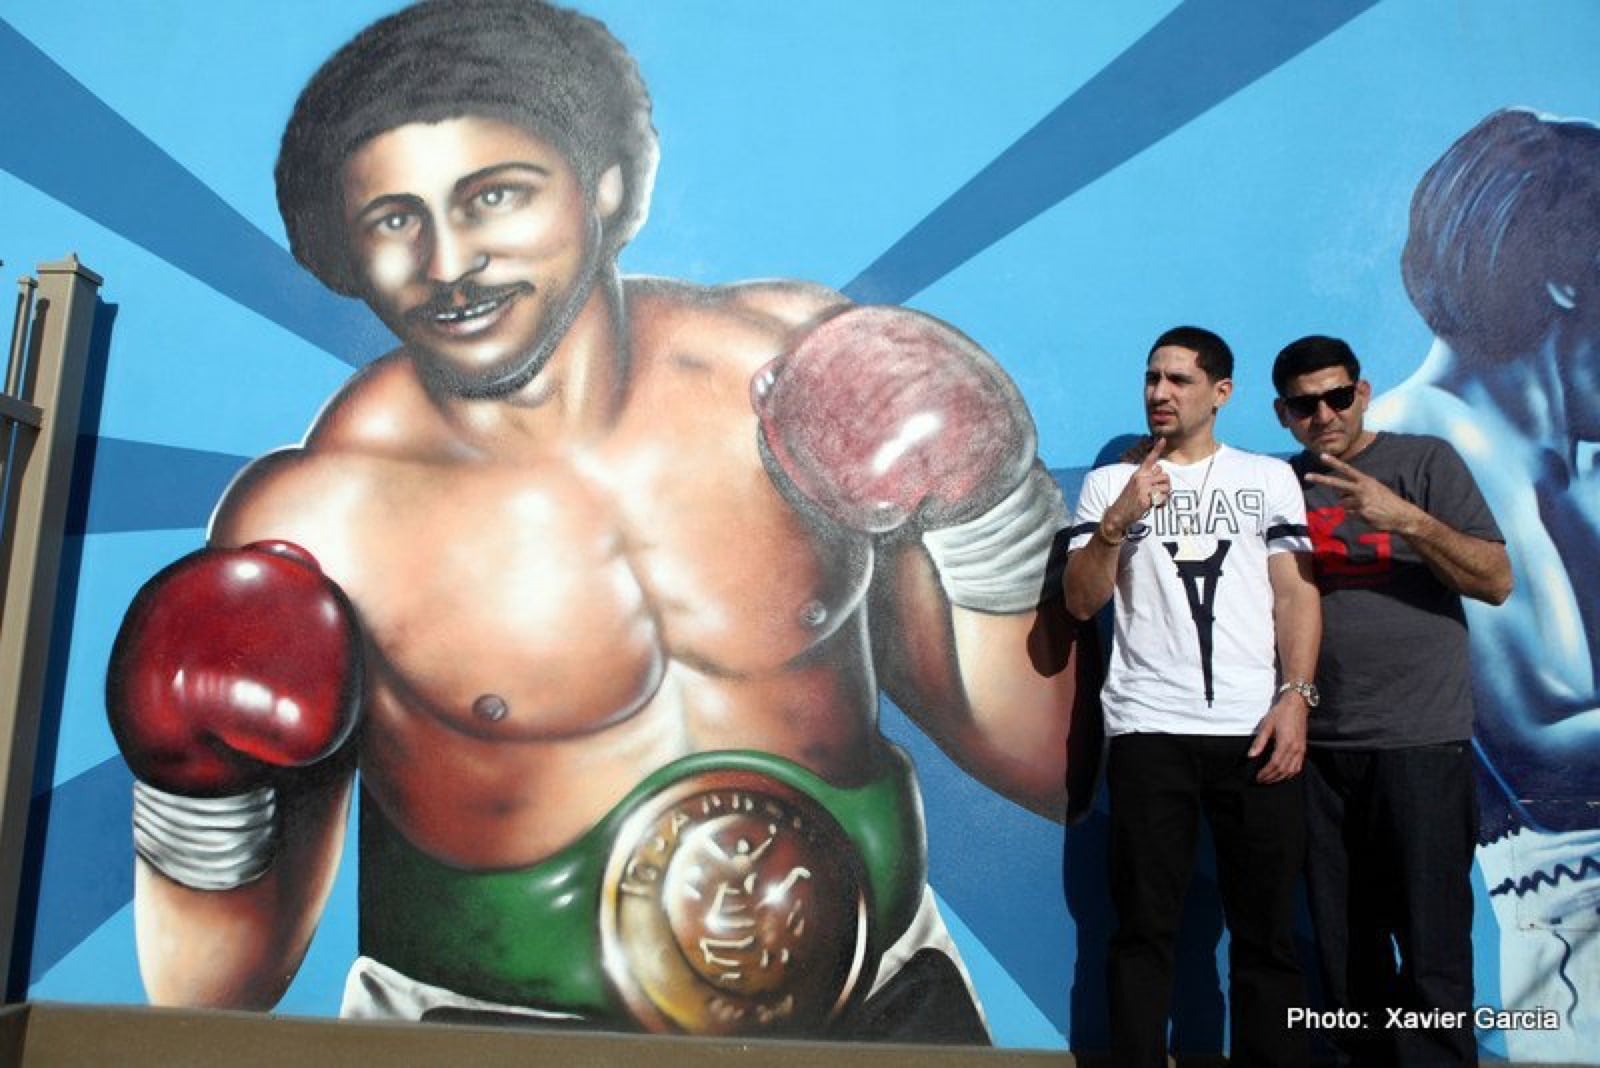 Wilfredo Gomez boxing image / photo